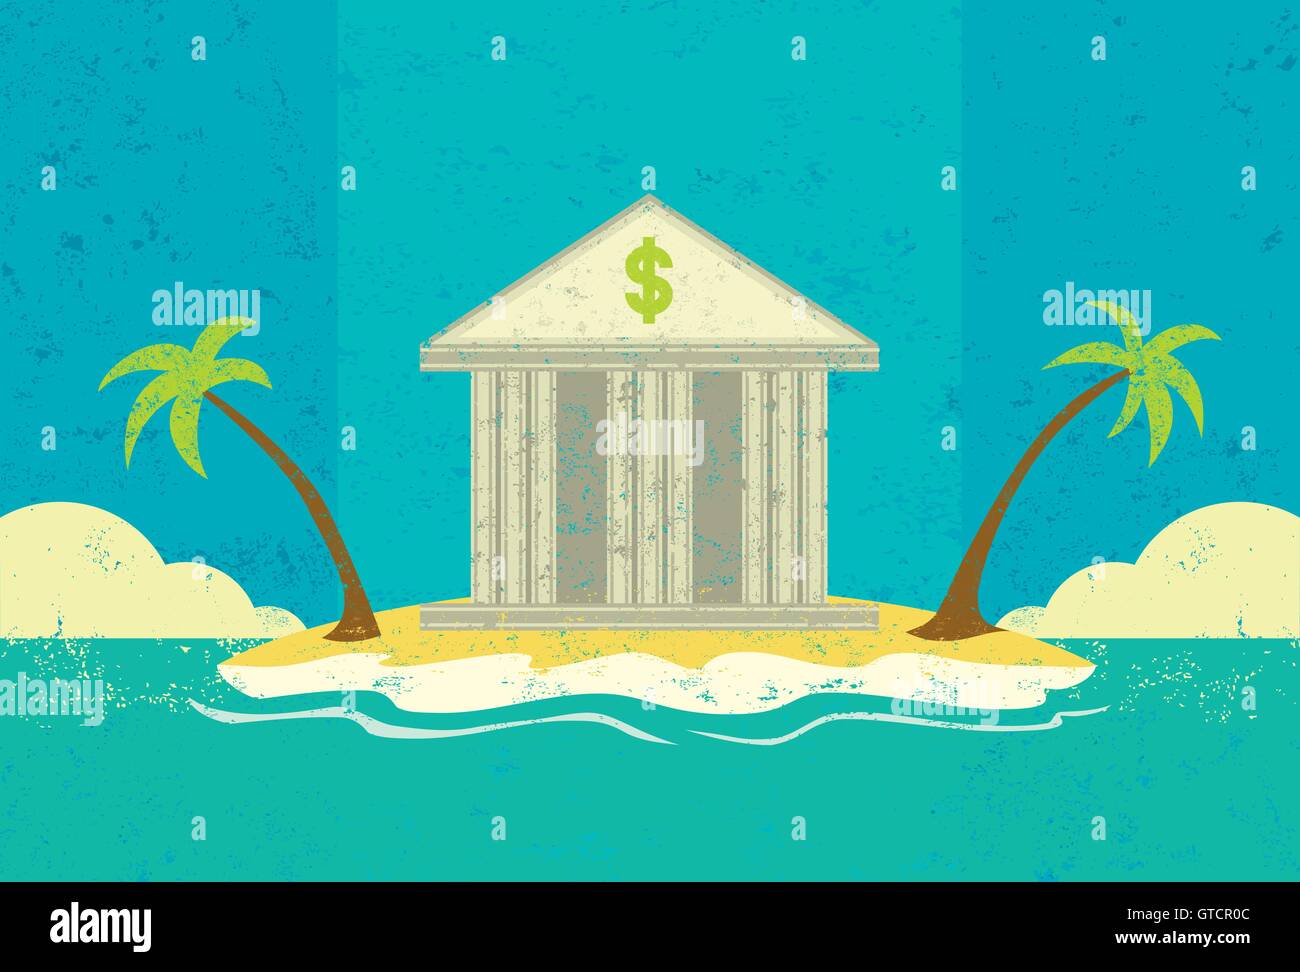 Prêteur de dernier recours une banque sur une île déserte tropicale représentant une dernière possibilité d'obtenir un prêt. Illustration de Vecteur